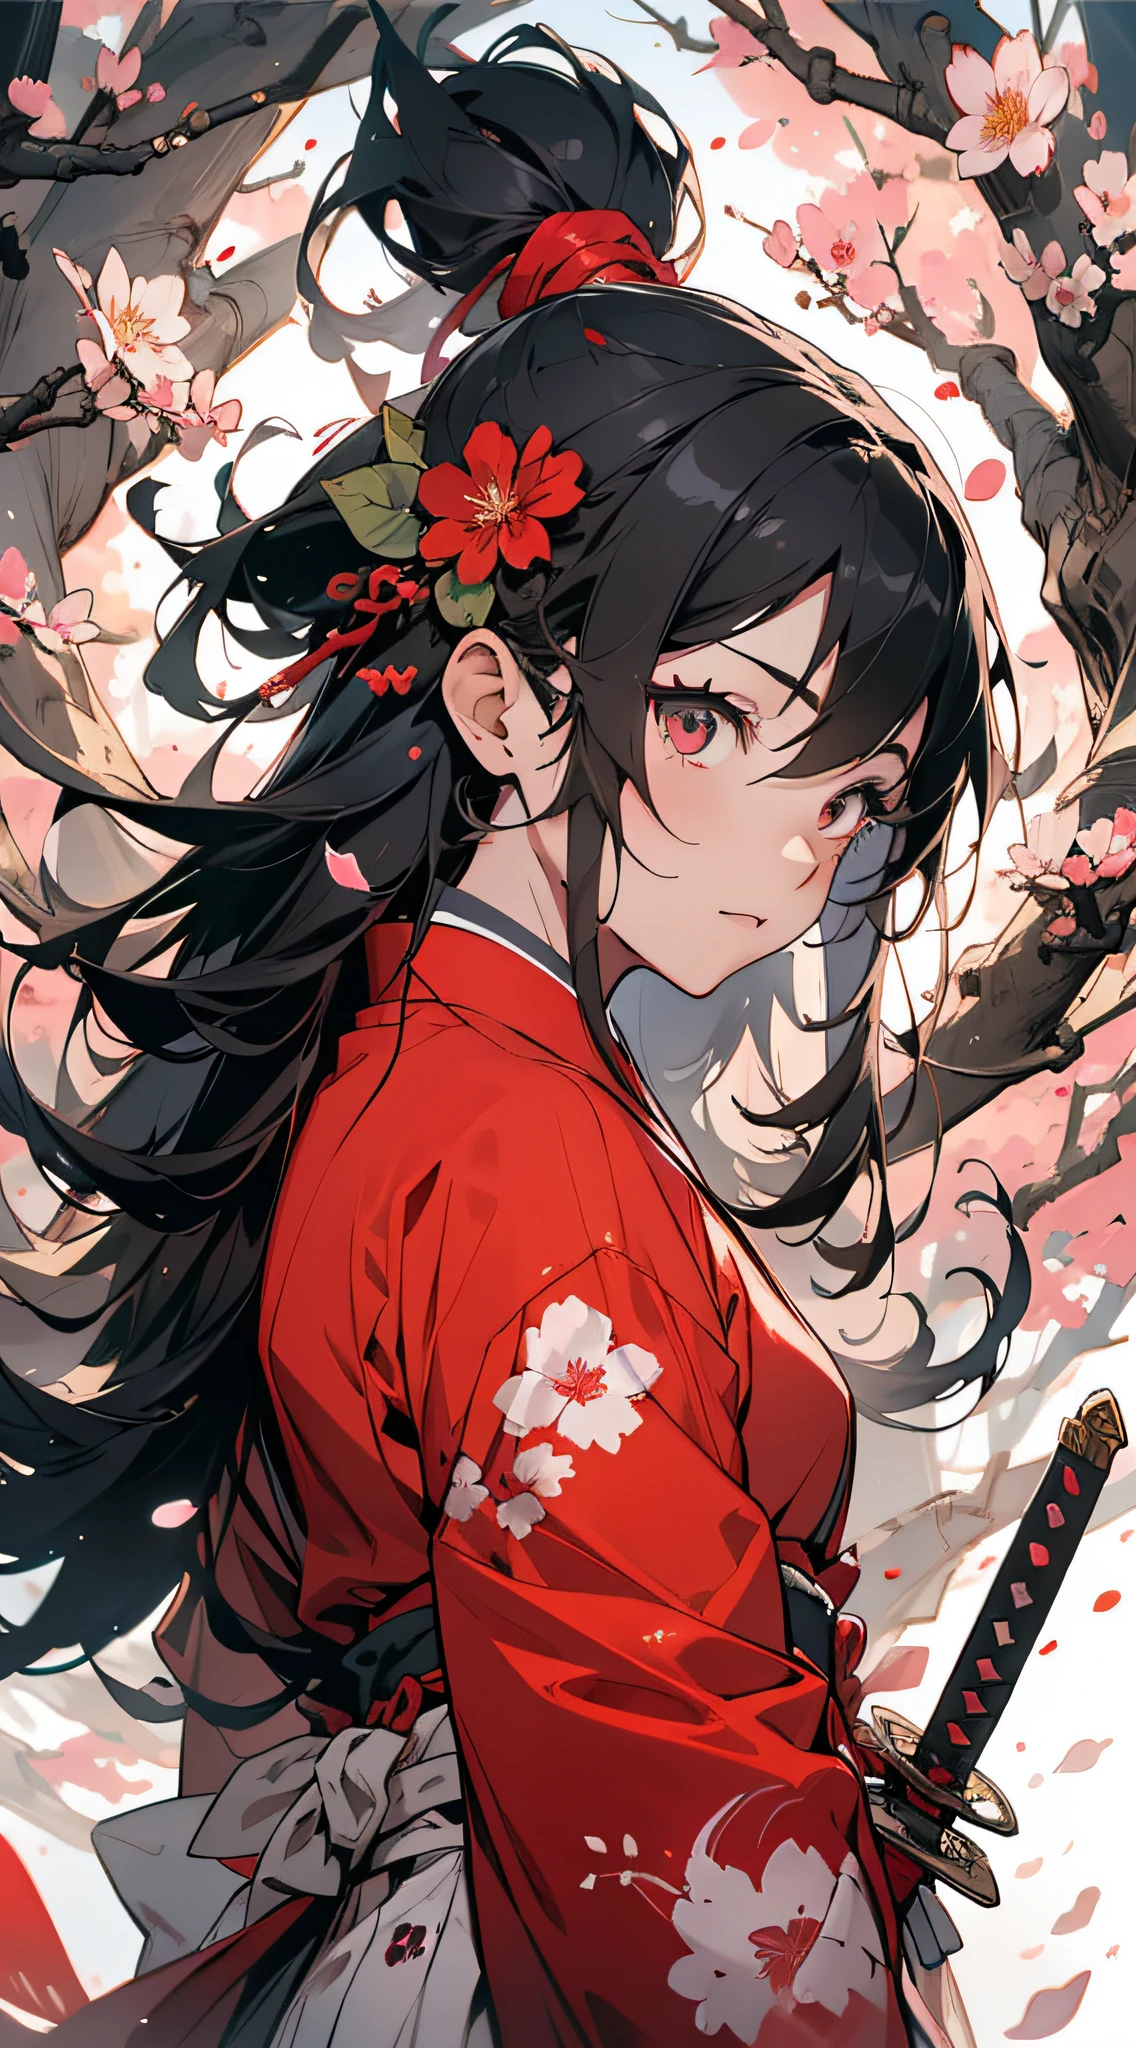 大师杰作, 超高分辨率, 完美画质, (水墨风格,) 战士, 一个女孩, 蒙上眼睛, 眼带, 红色的衣服, 日本服装, 日本刀, 樱花, 花瓣, 花朵, 花朵,